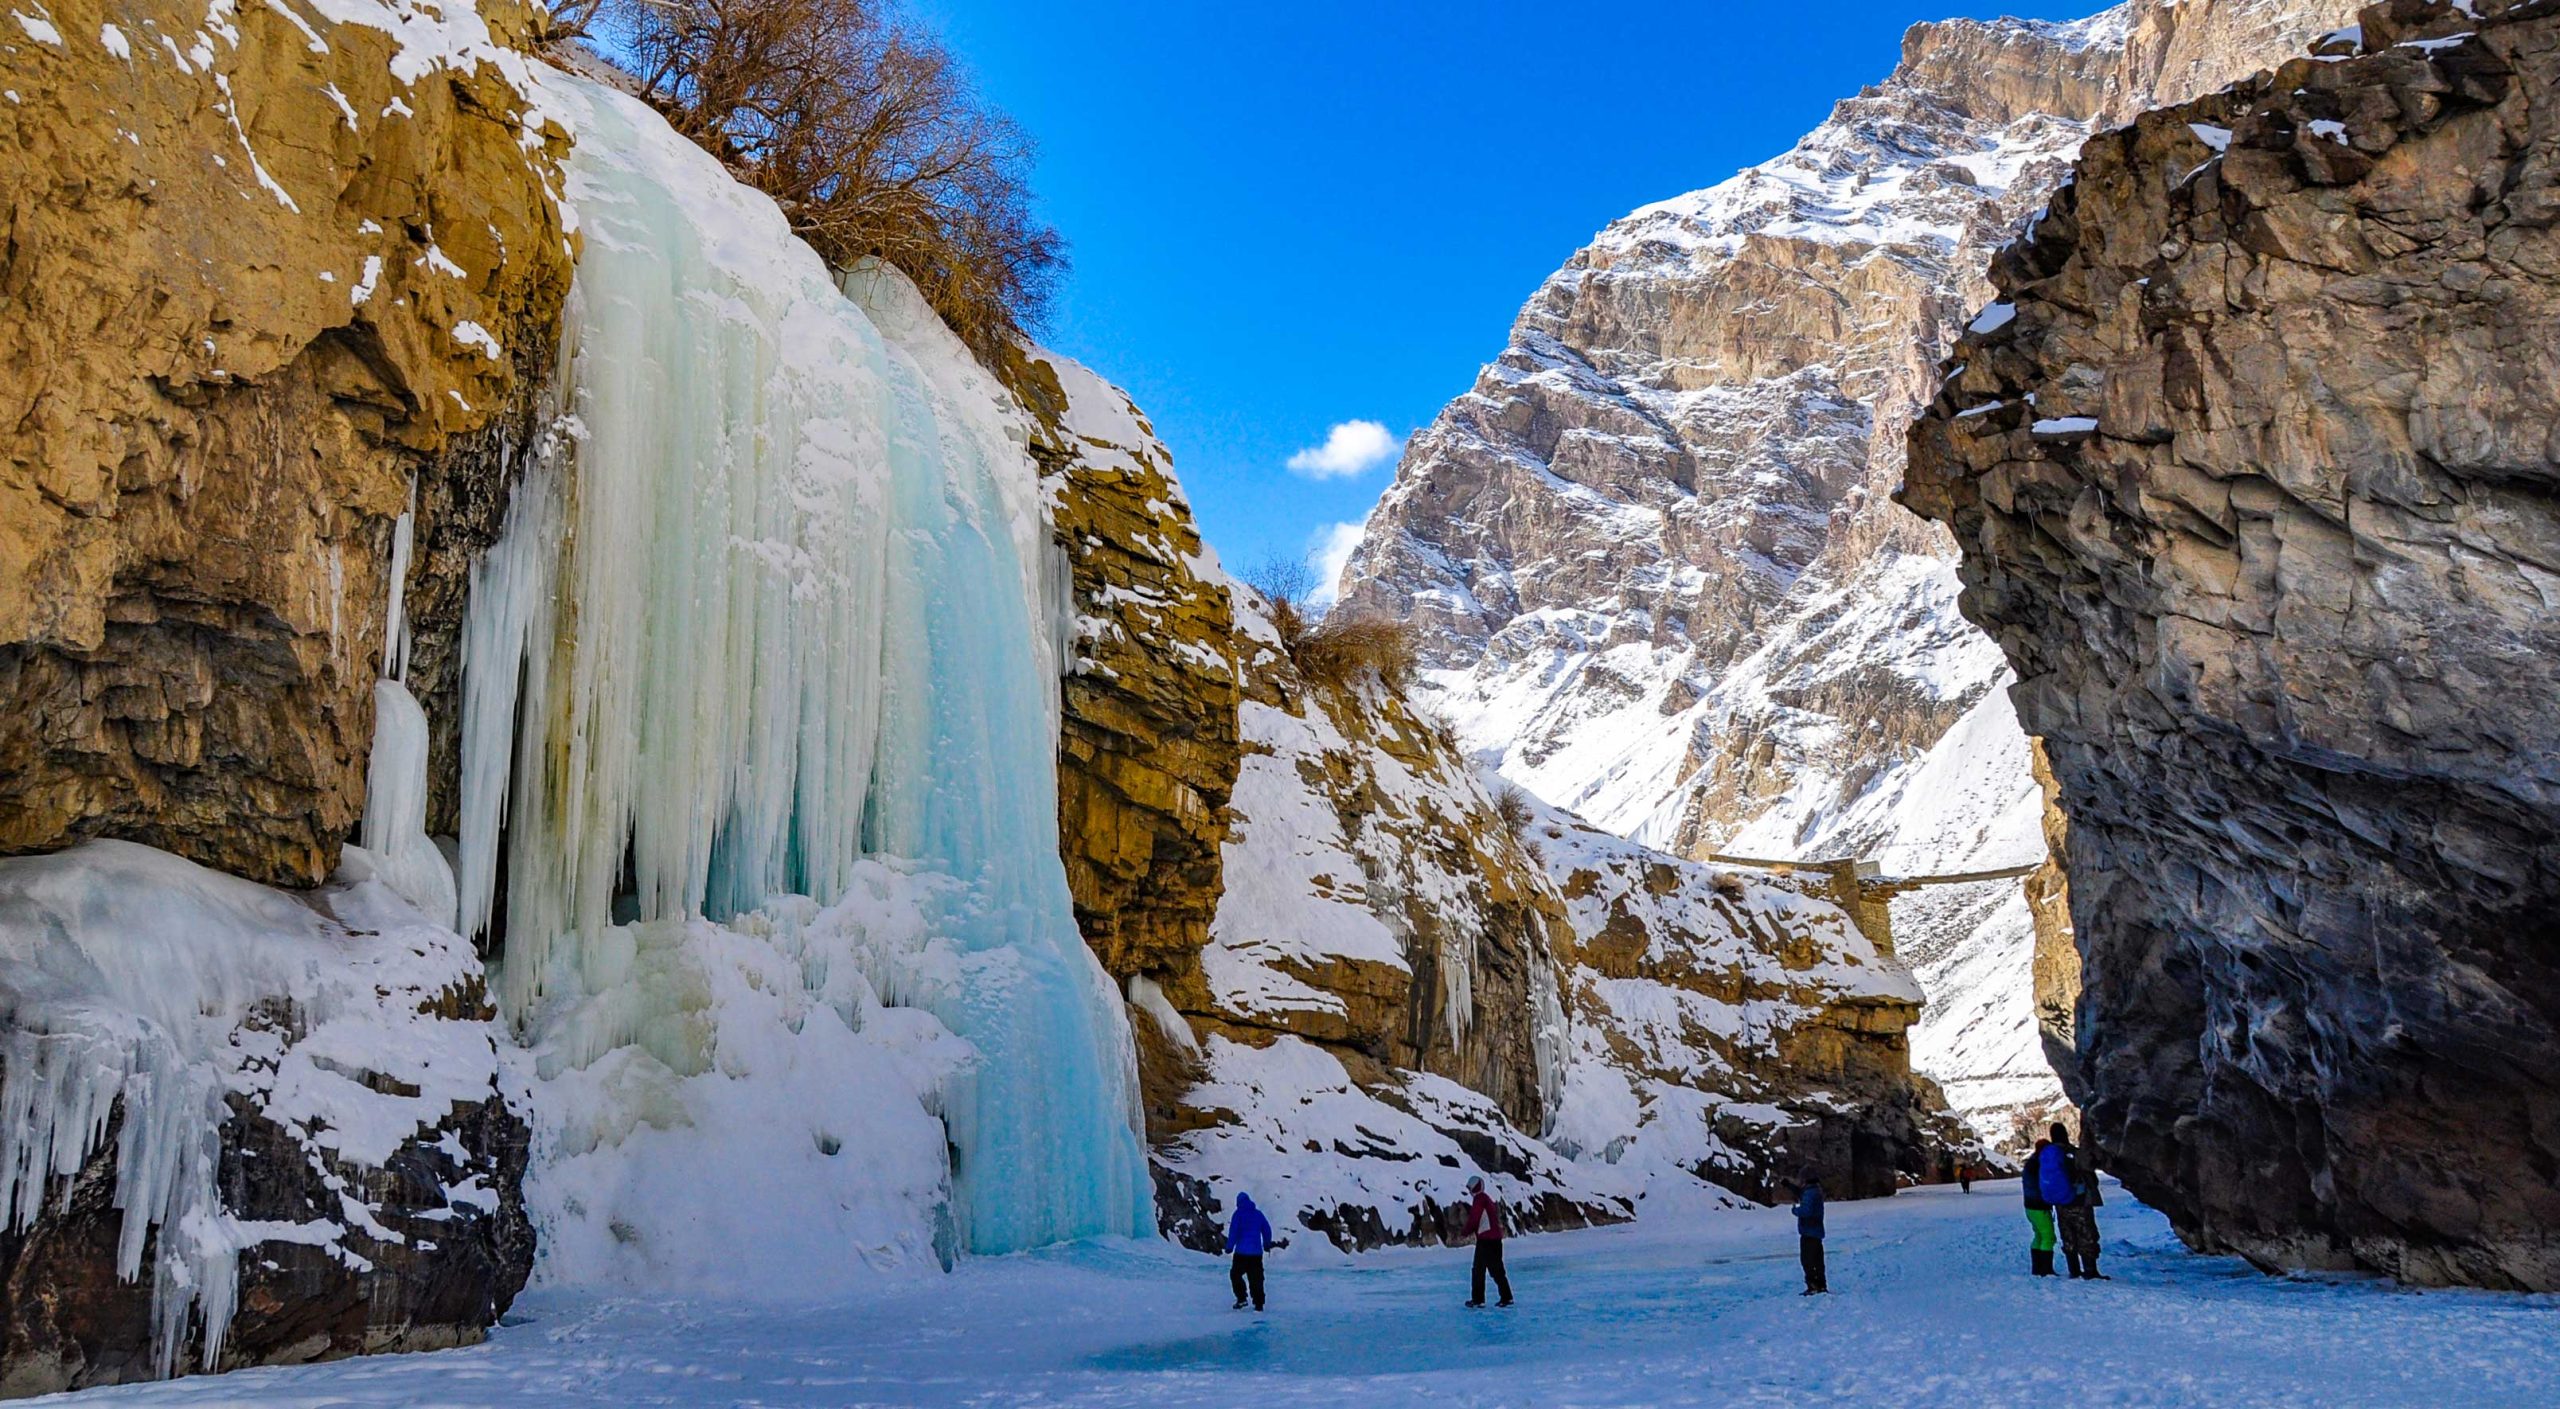 Chadar Trek Or Zanskar Frozen River Trek